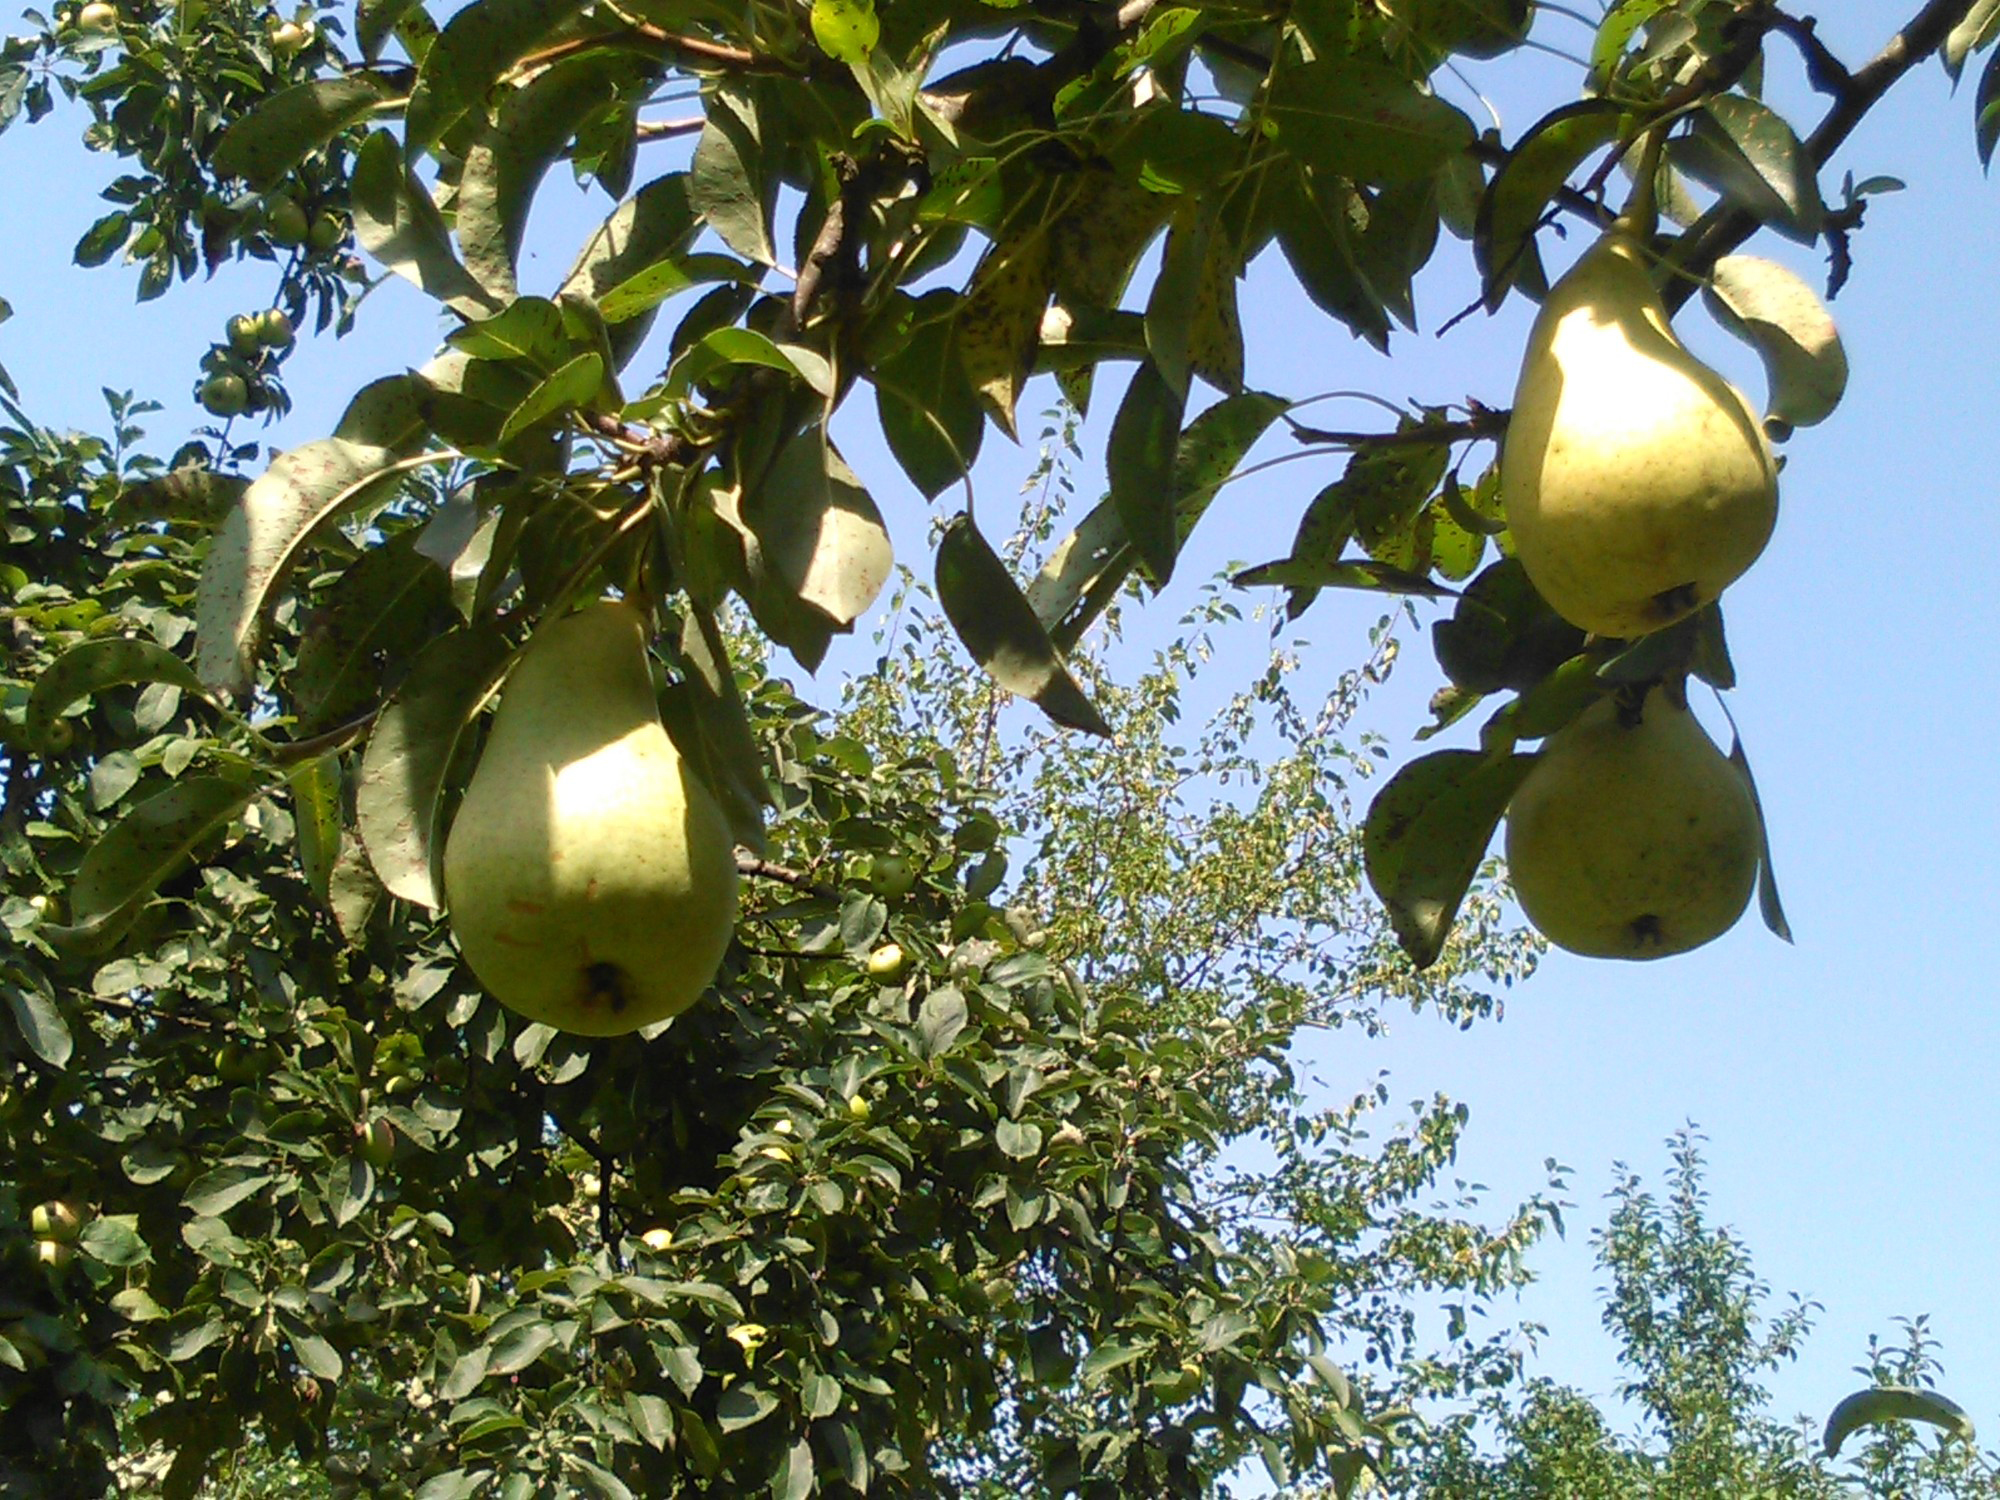 Jesen stiže dunjo moja… jabuko, kruško, papriko…